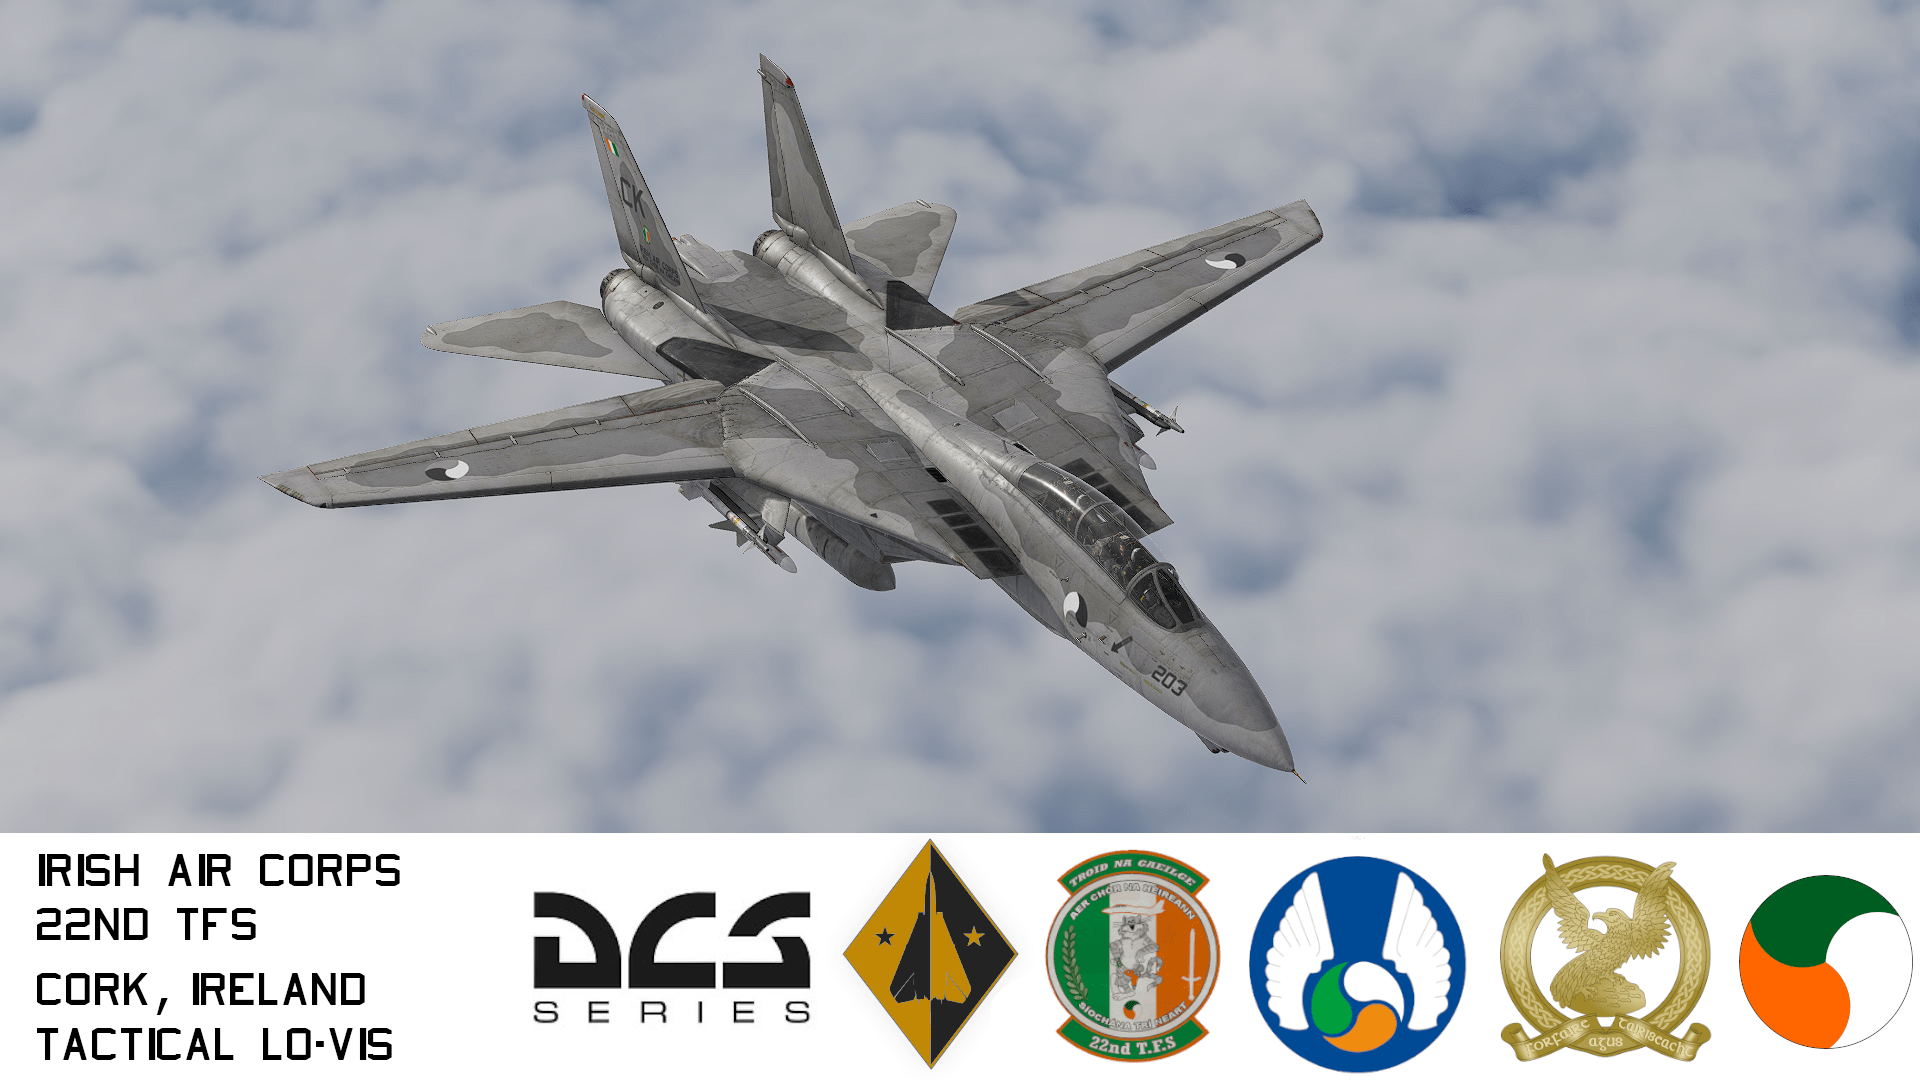 Irish Air Corps 22nd T.F.S "Fighting Irish" F-14 Tomcat